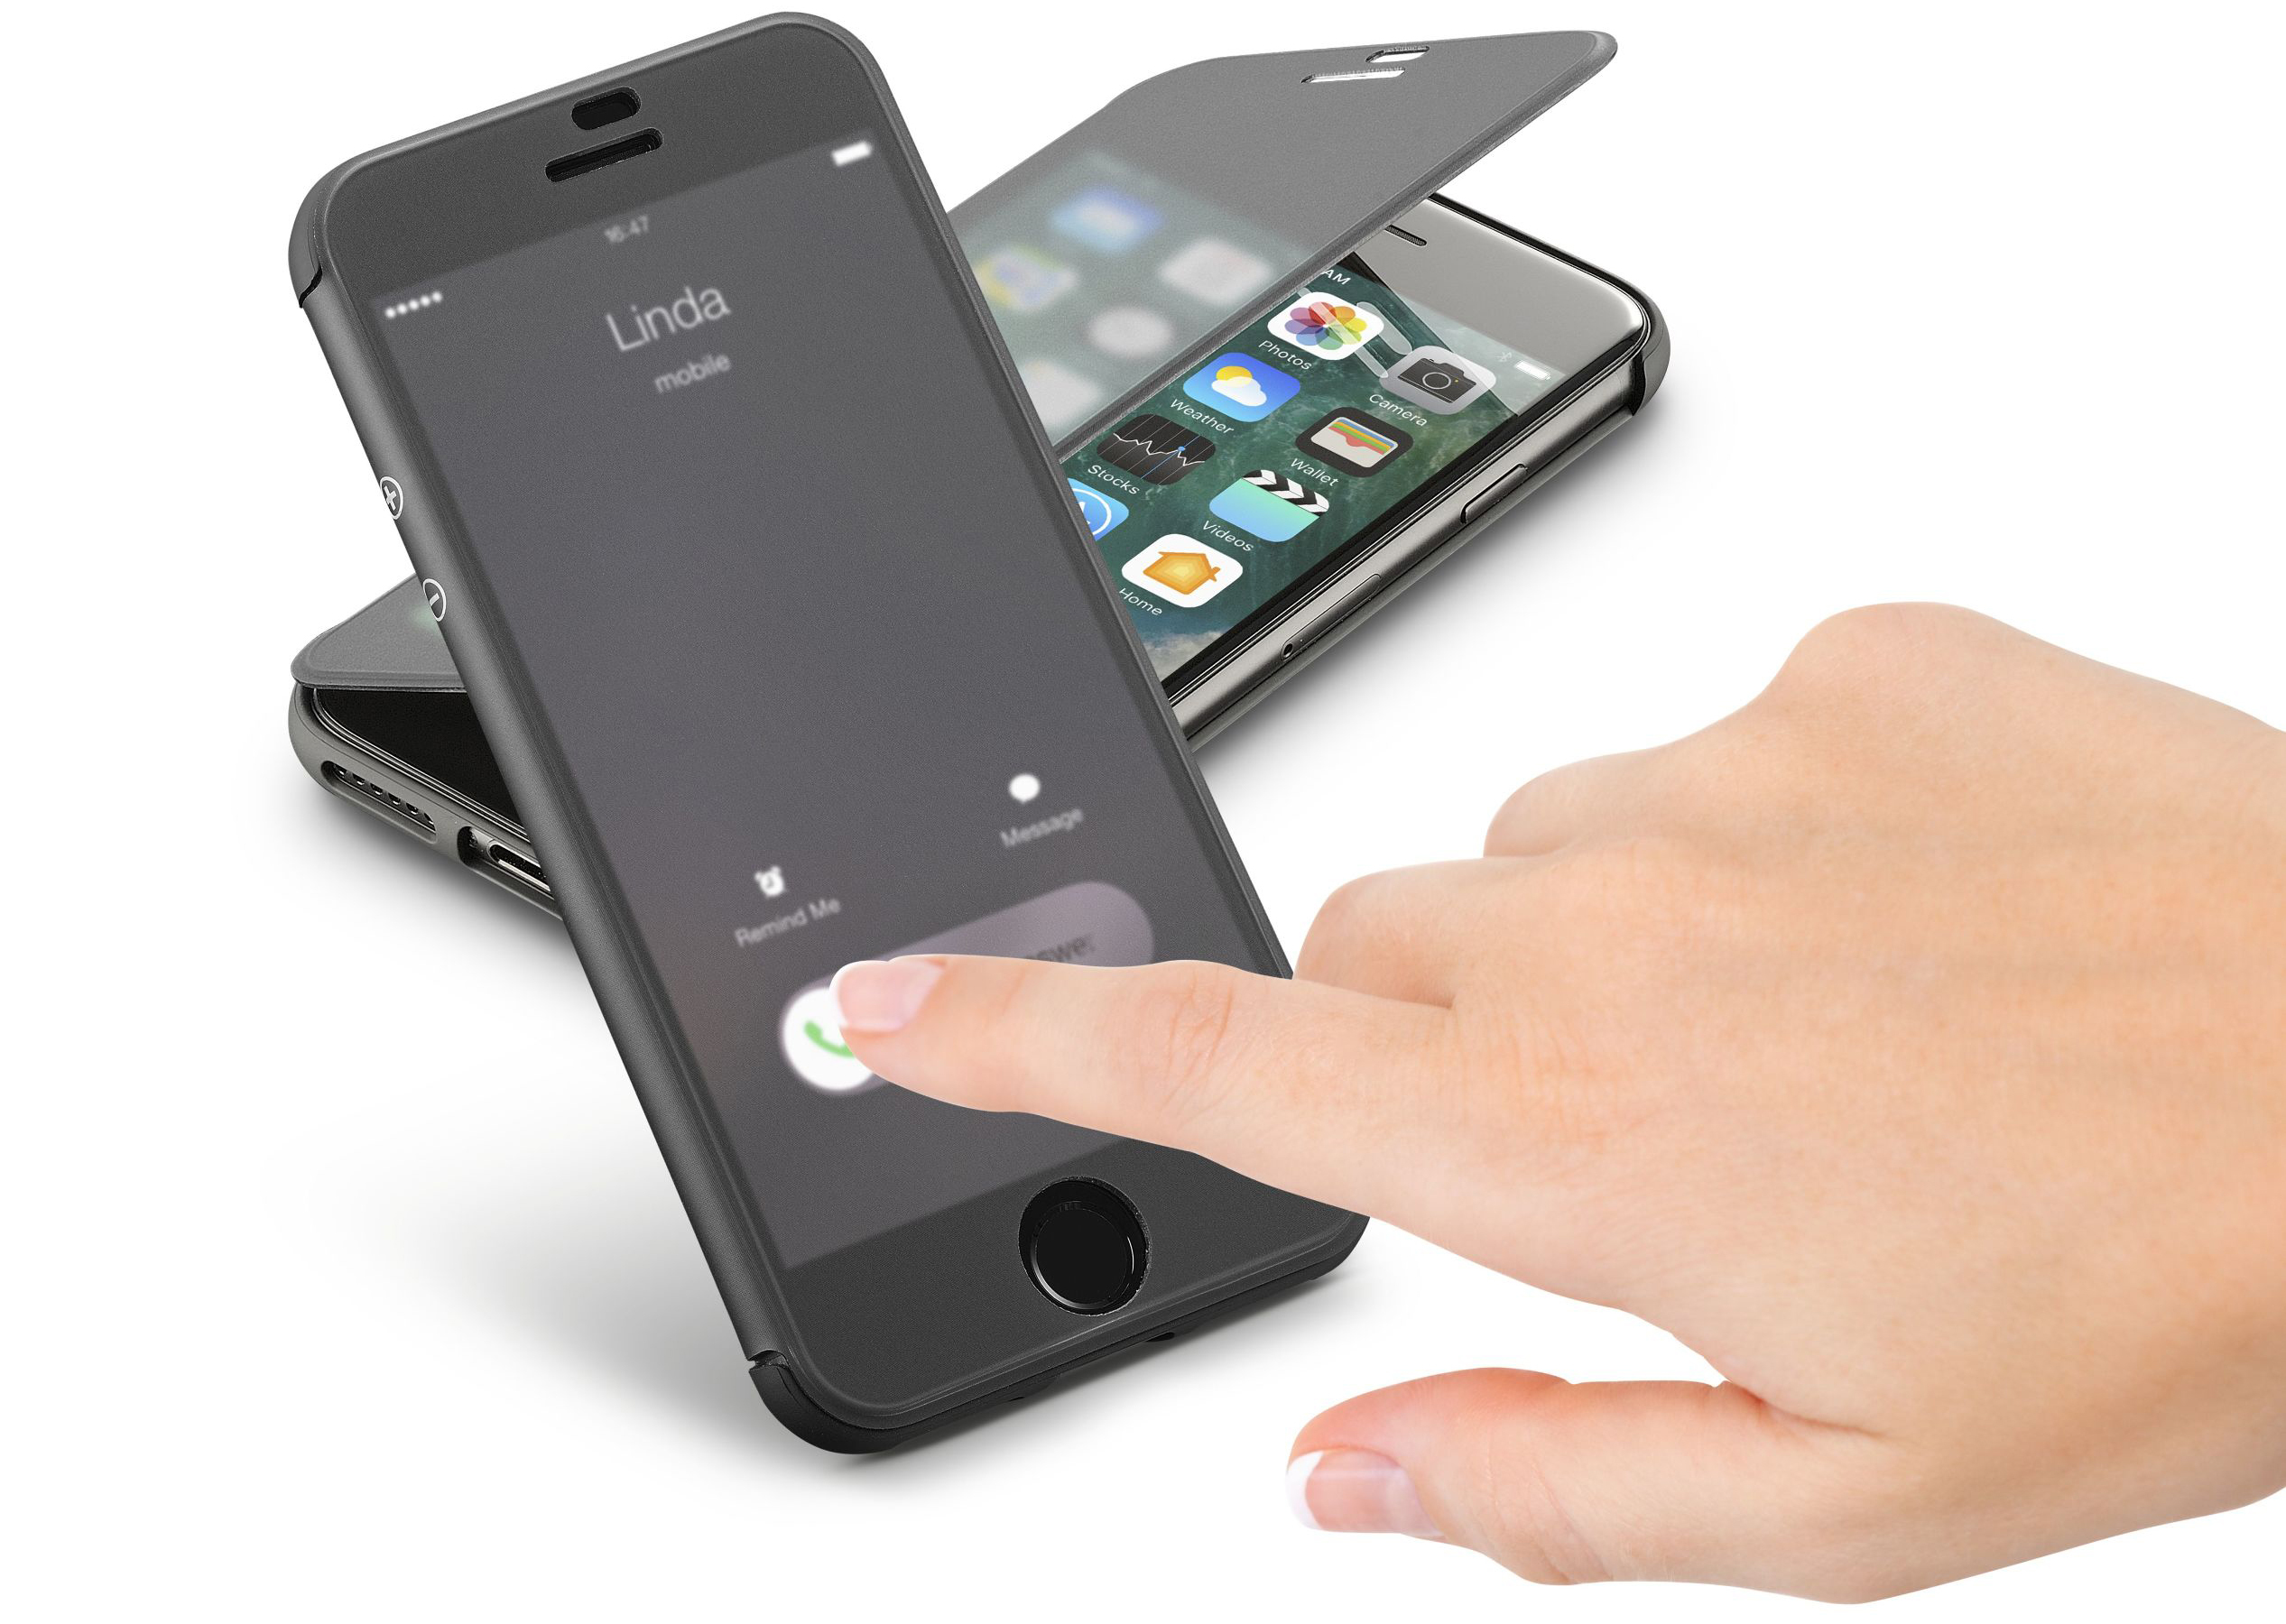 カバーを閉じたまま タッチ操作可能な手帳型iphoneケースにiphone7 Iphone7 Plus専用モデル が新登場 株式会社ラウダのプレスリリース